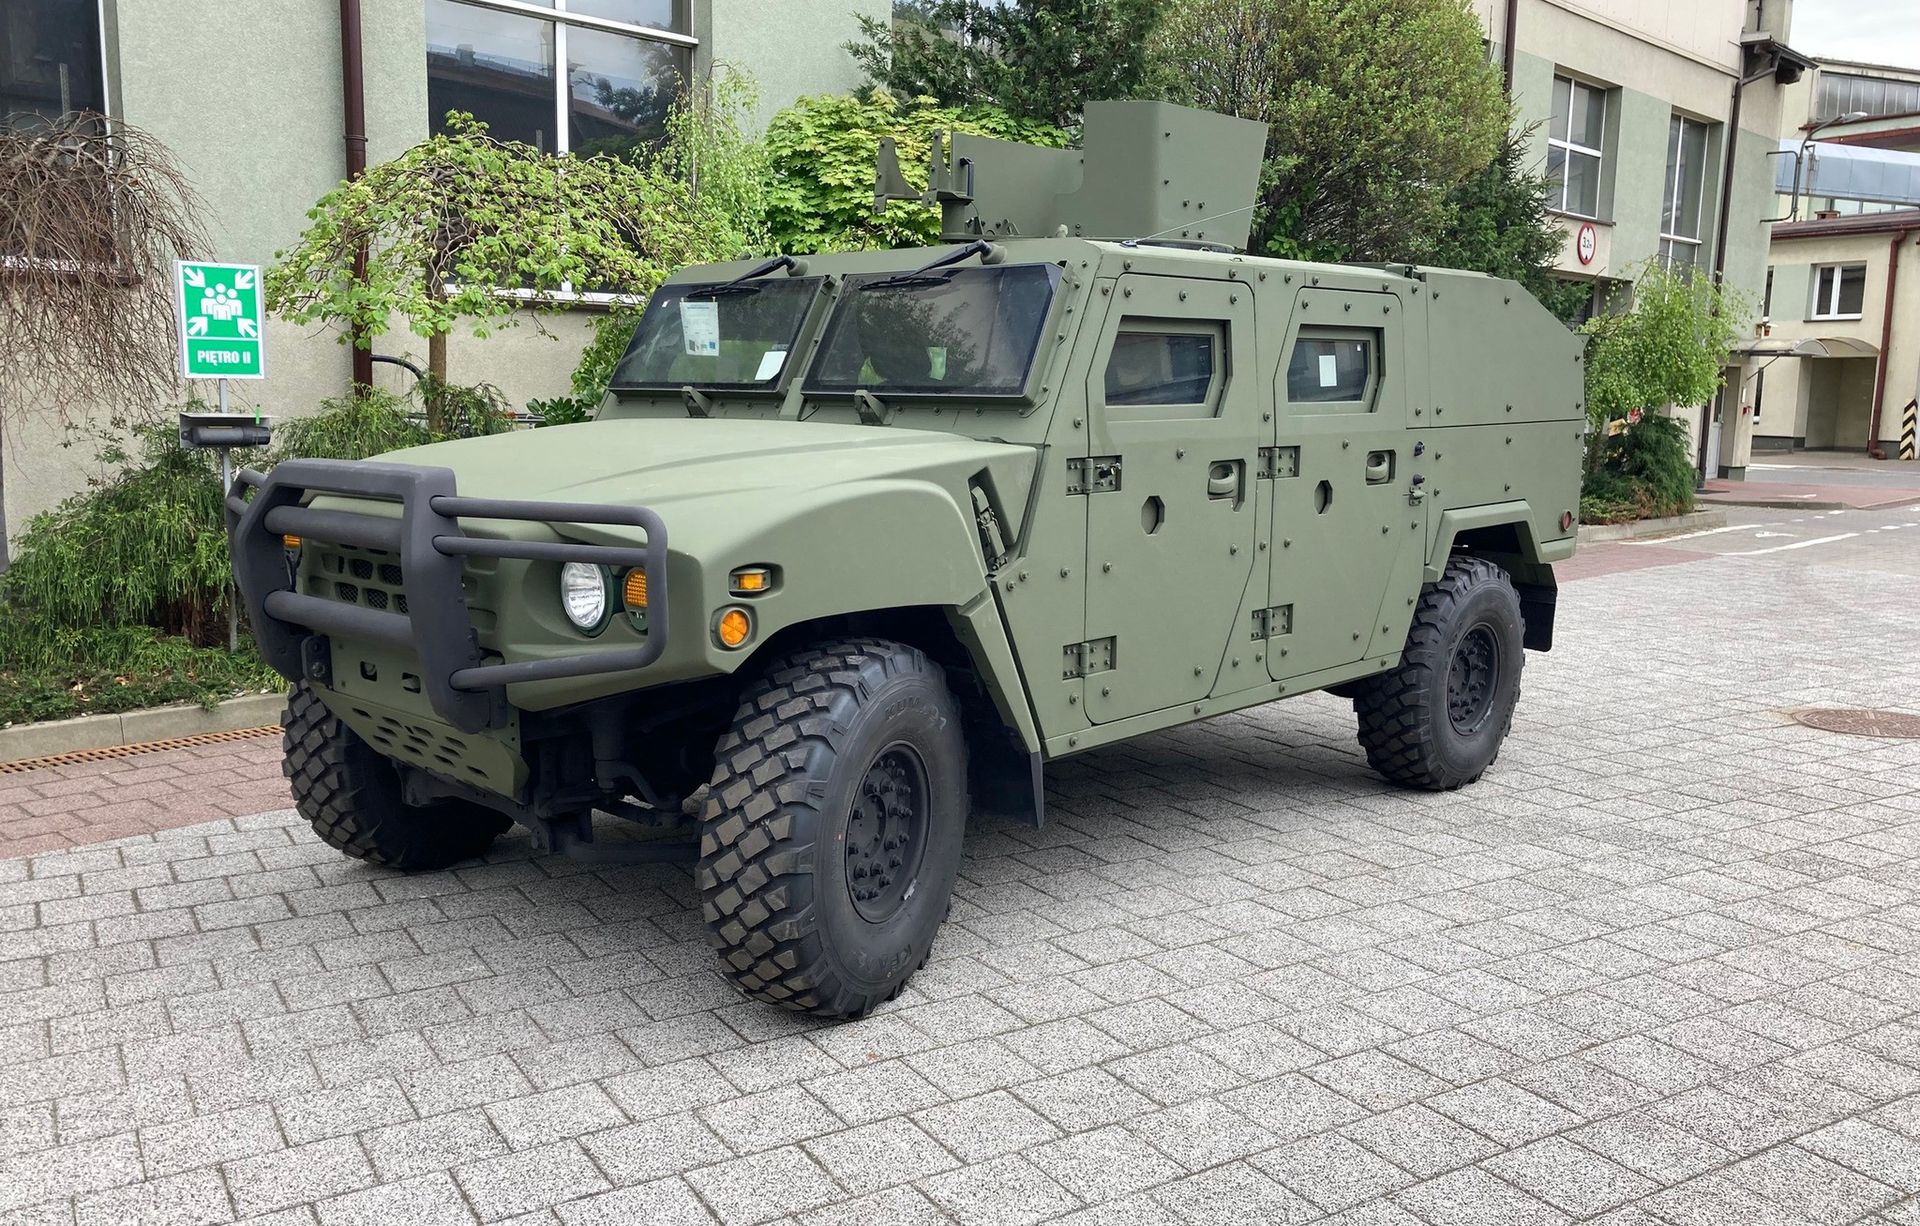 wojsko zamówiło 400 aut. kia kltv dotarła do polski